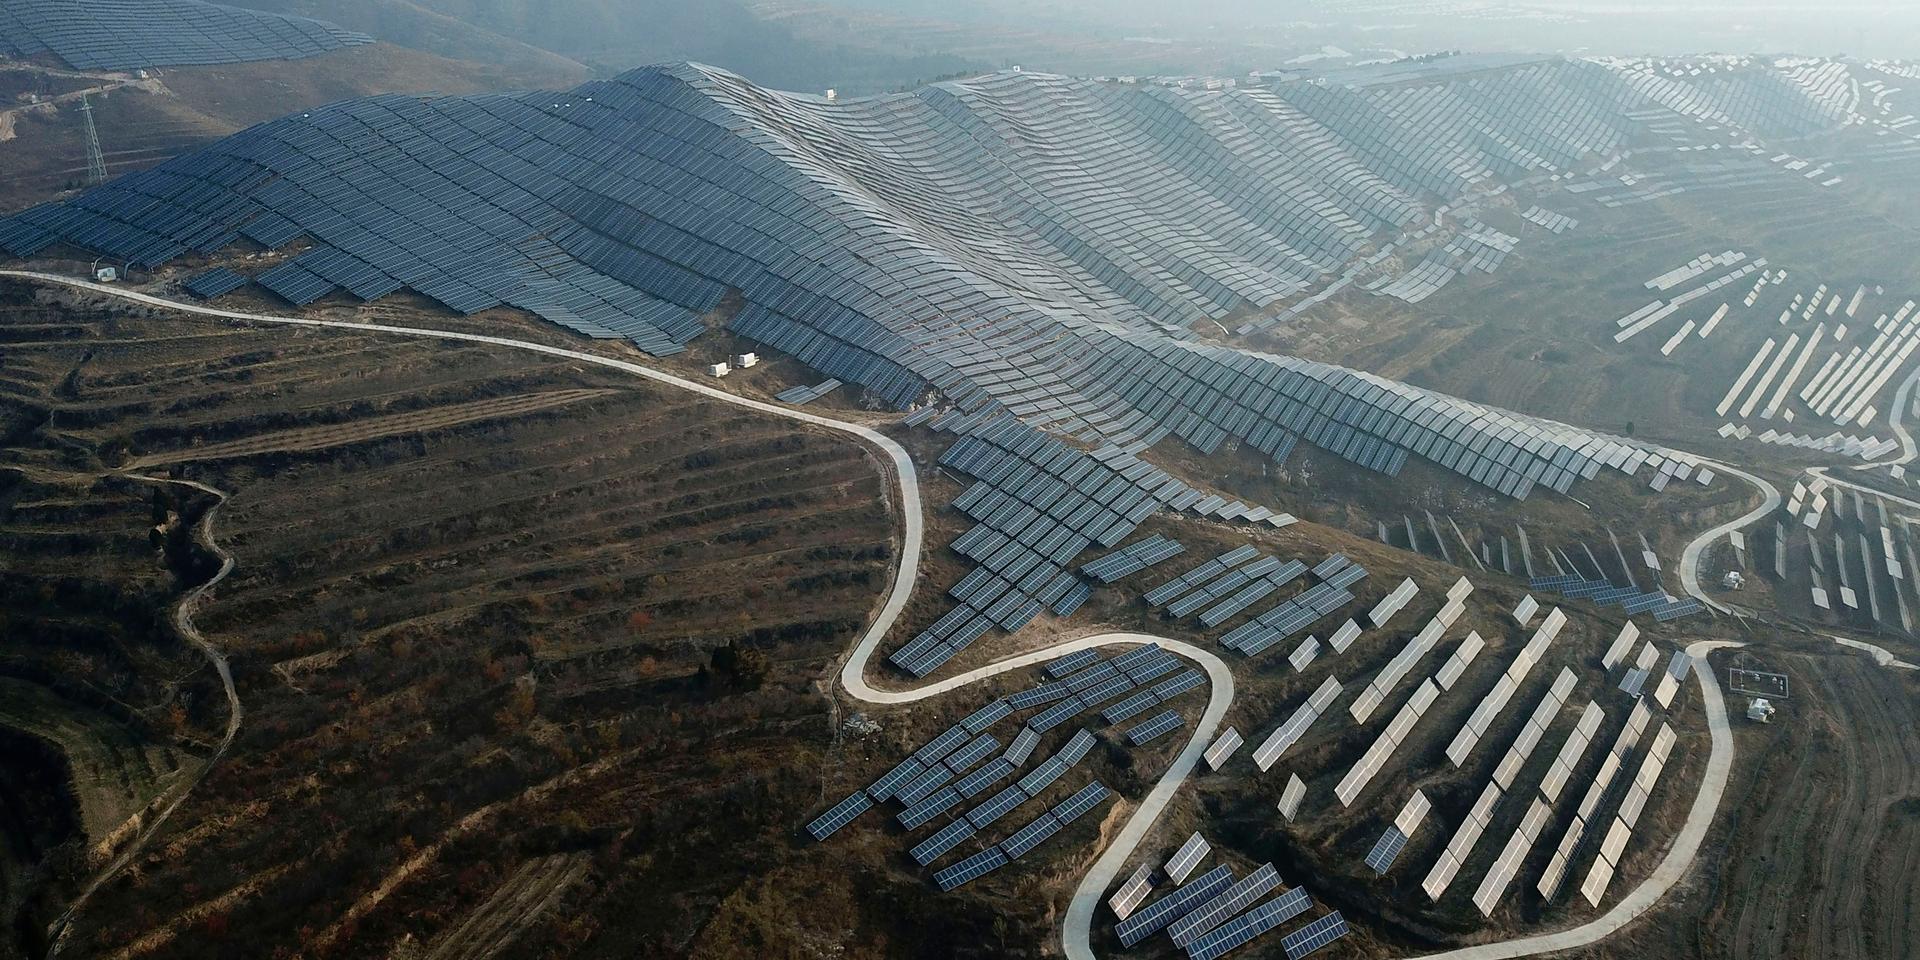 En syn som ska bli allt vanligare. Arkivbild på en jättelik solenergipark i Ruicheng i den kinesiska provinsen Shanxi.